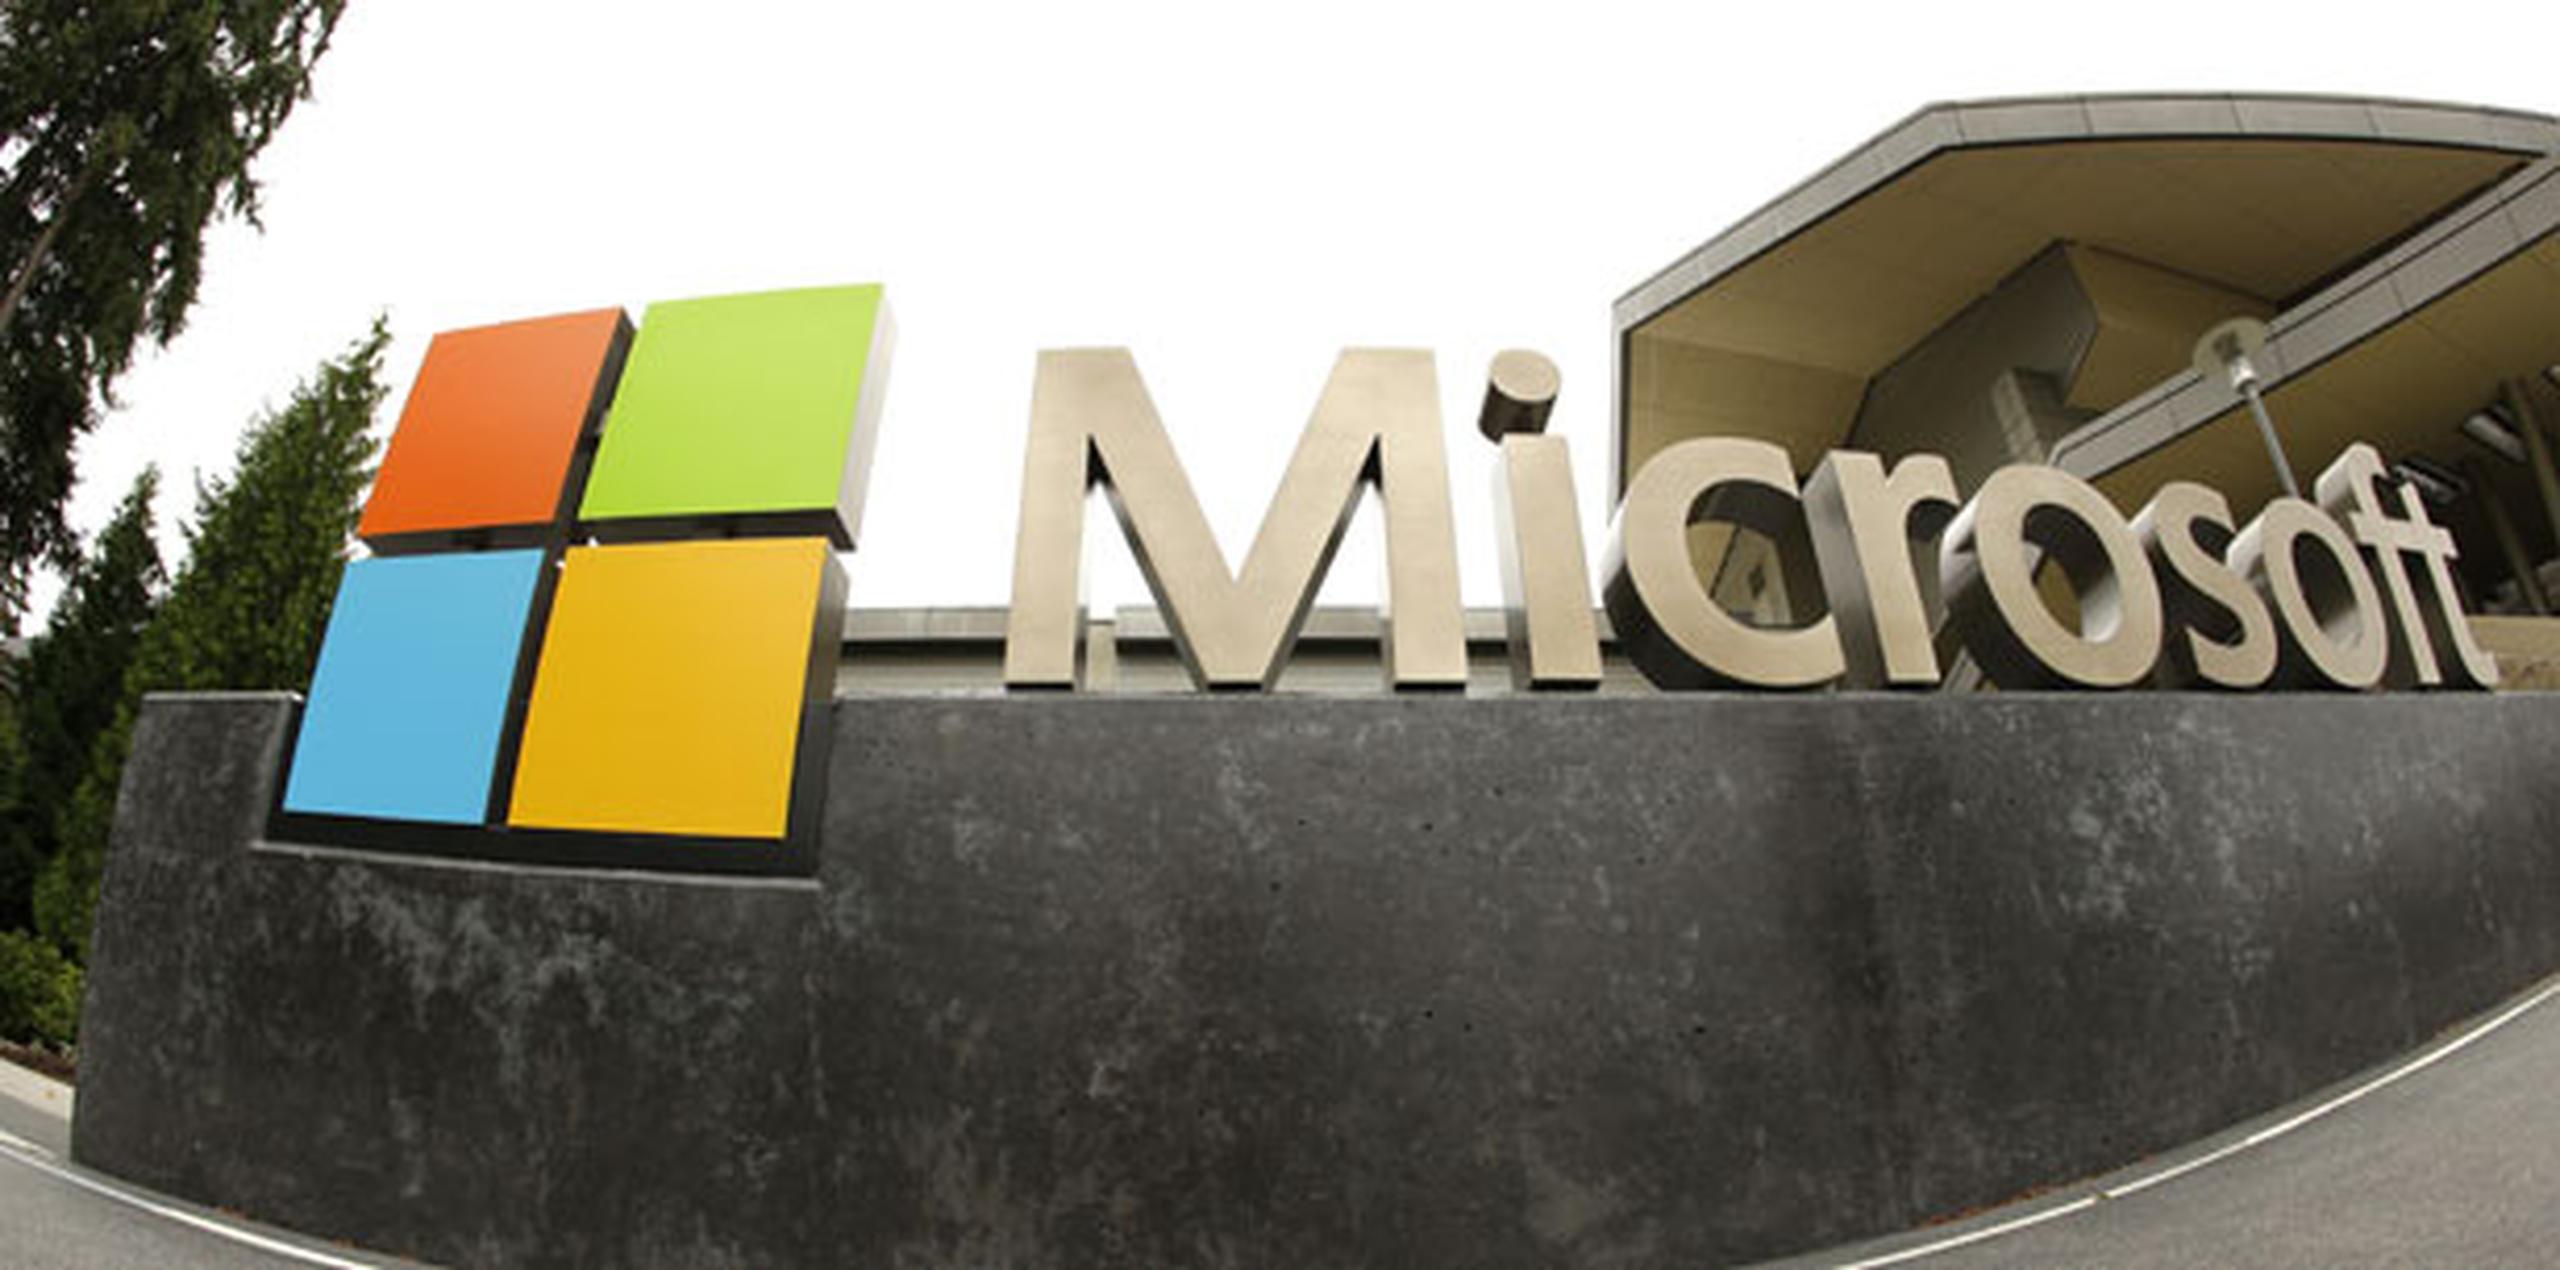 La plantilla de Microsoft se situó en 114,000 empleados a finales de junio, alrededor de 44,000 de ellos en el estado de Washington. (Archivo)